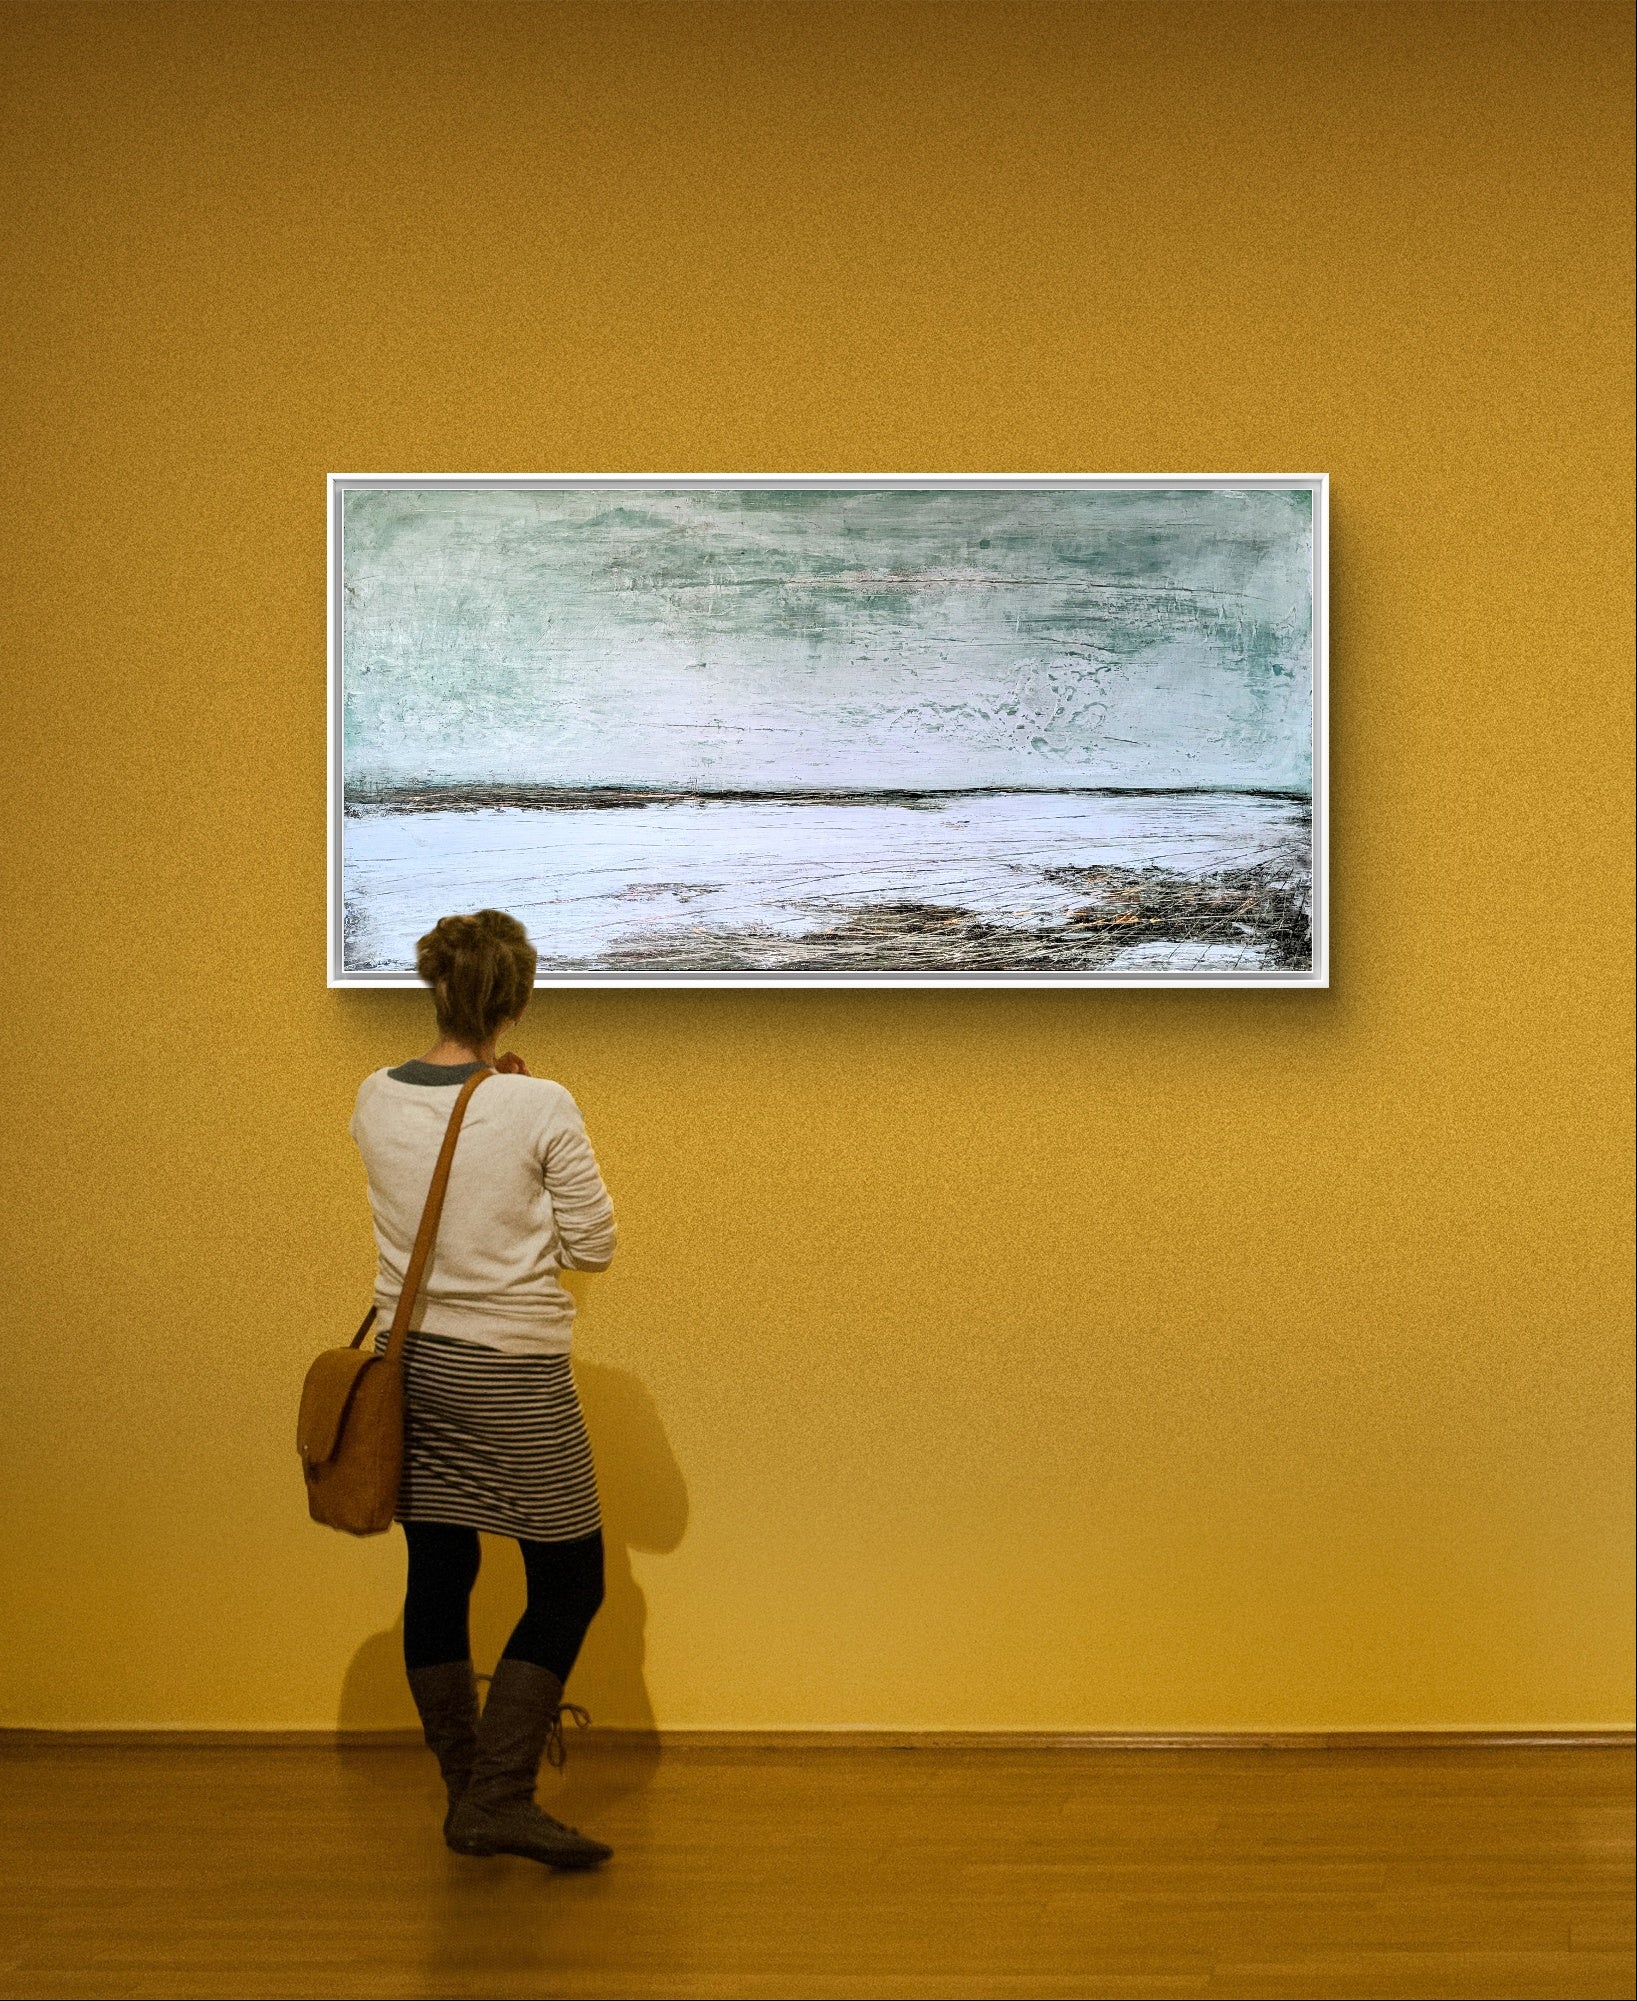 abstraktes Bild - NEU IM JUNI - blau 160 x 80 cm,abstrakte große Leinwandbilder abstrakte Bilder kaufen ,